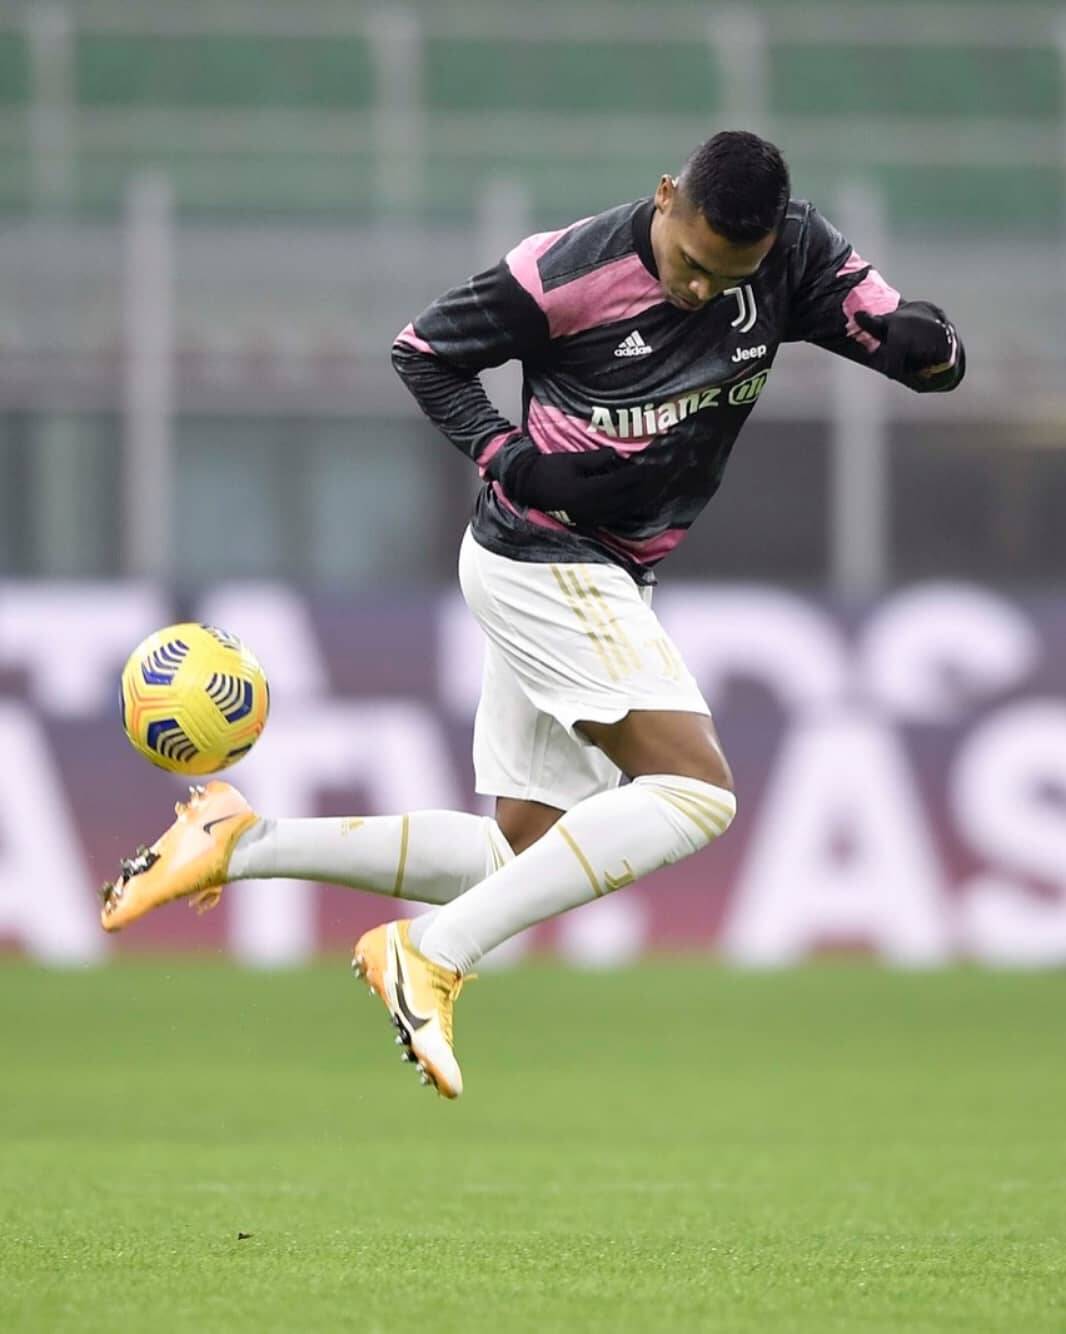 Foto: Reprodução / Instagram Juventus